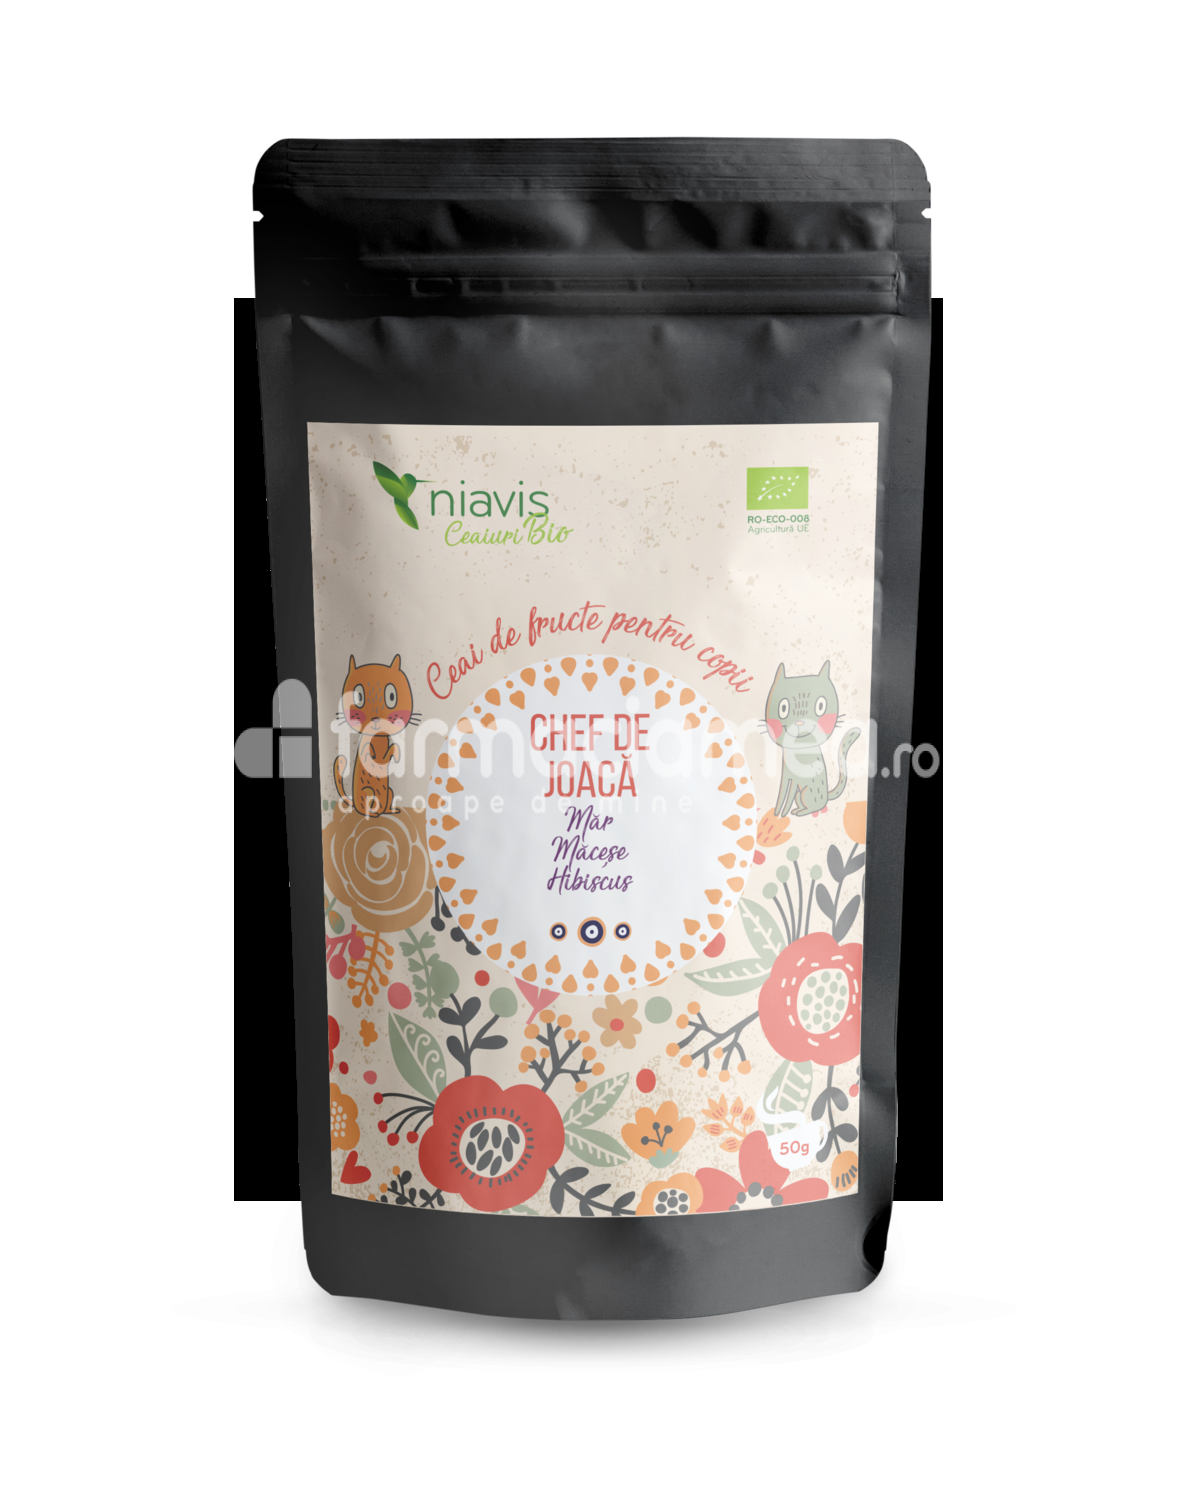 Ceaiuri - Niavis Ceai pentru copii ecologic Bio "Chef de joaca", aroma de mar, macese si hibiscus, 50 g, farmaciamea.ro